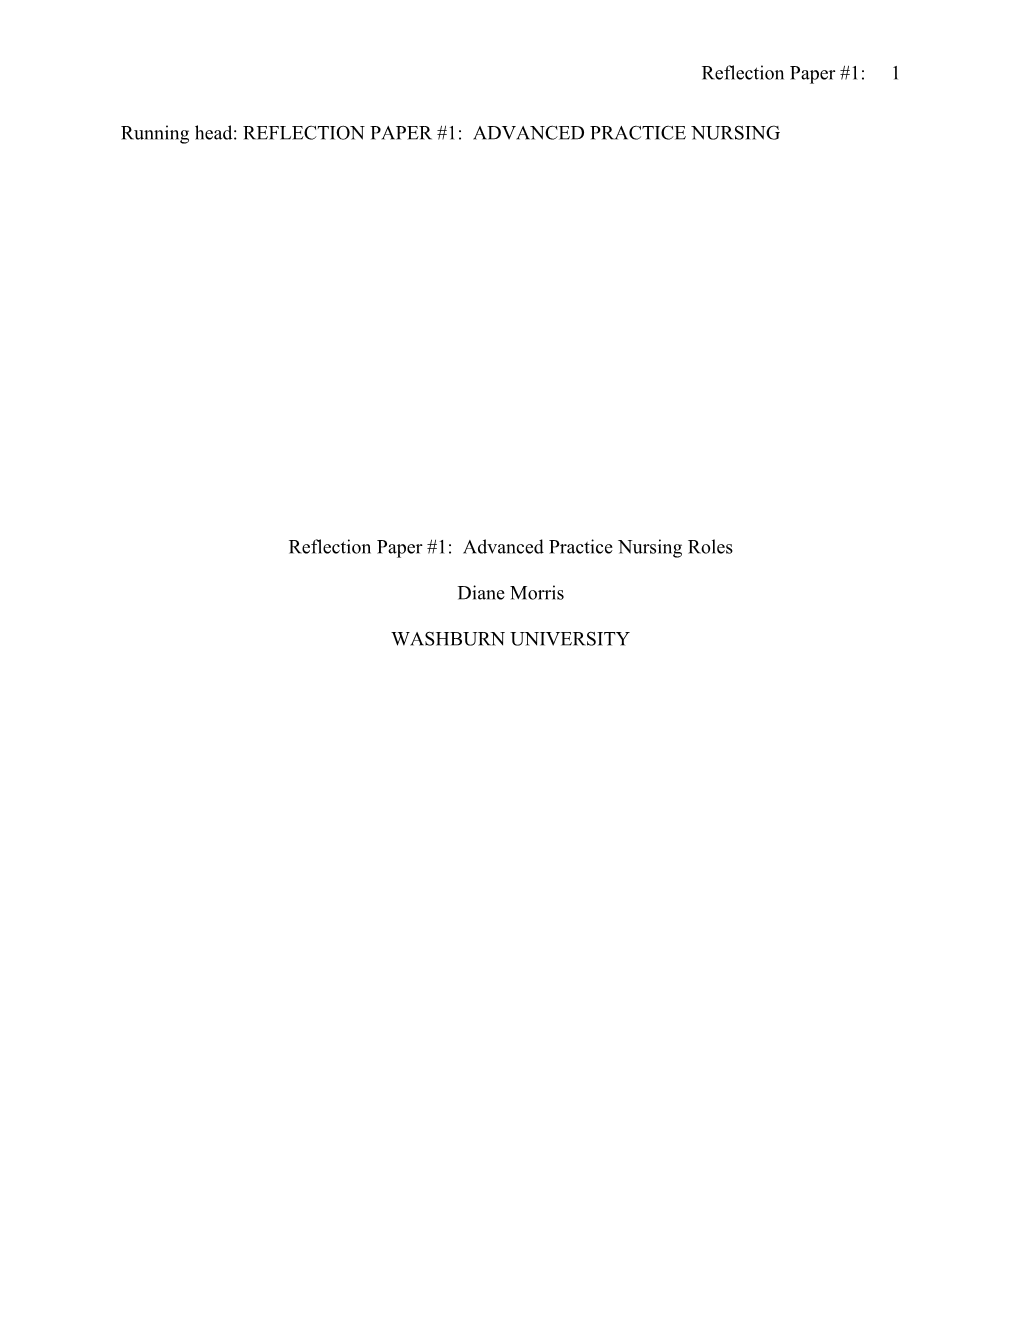 Reflection Paper #1: Advanced Practice Nursing Roles